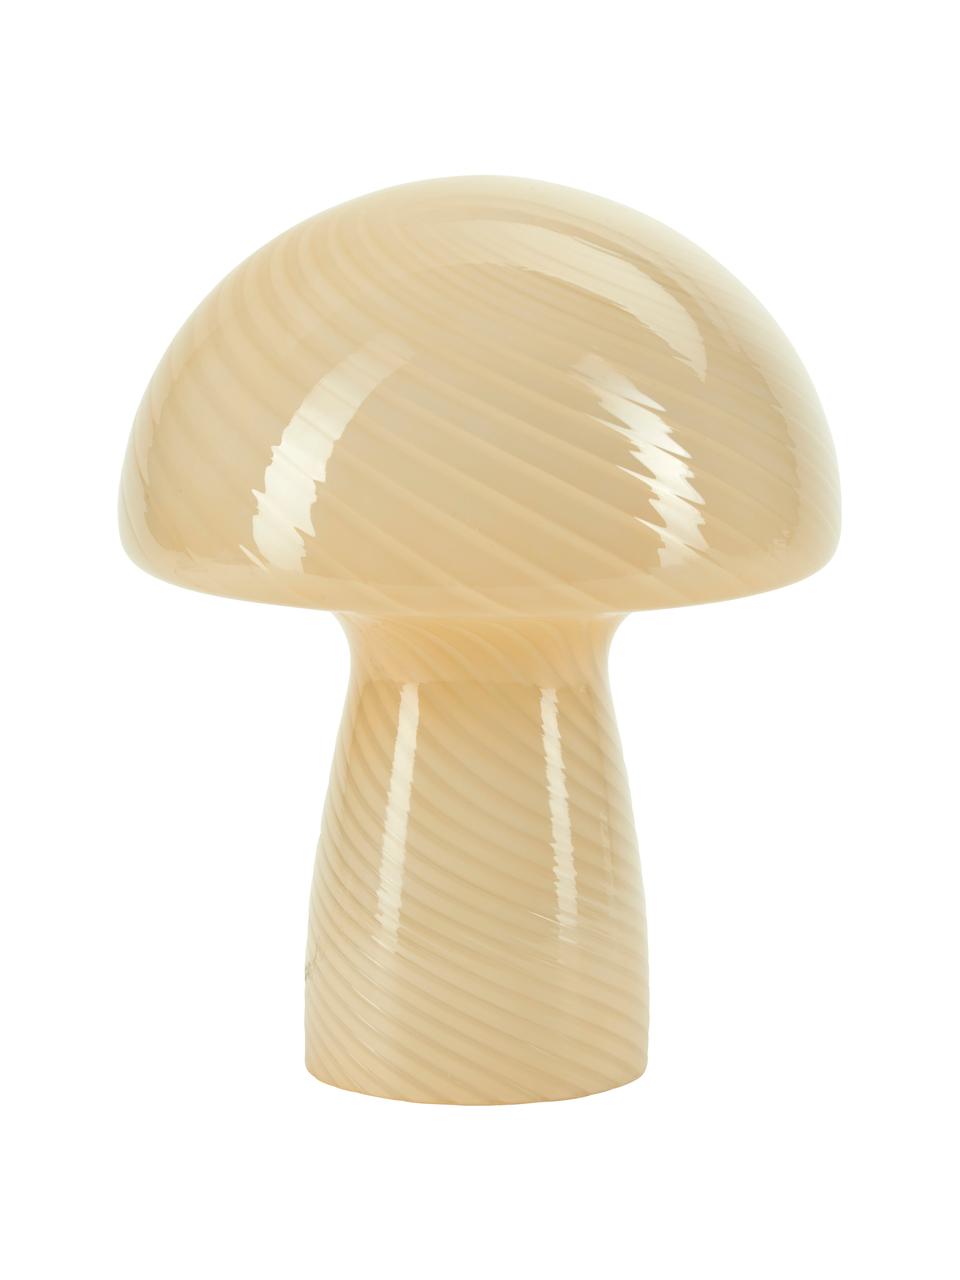 Kleine tafellamp Mushroom van glas in geel, Lamp: glas, Geel, Ø 19 x H 23 cm